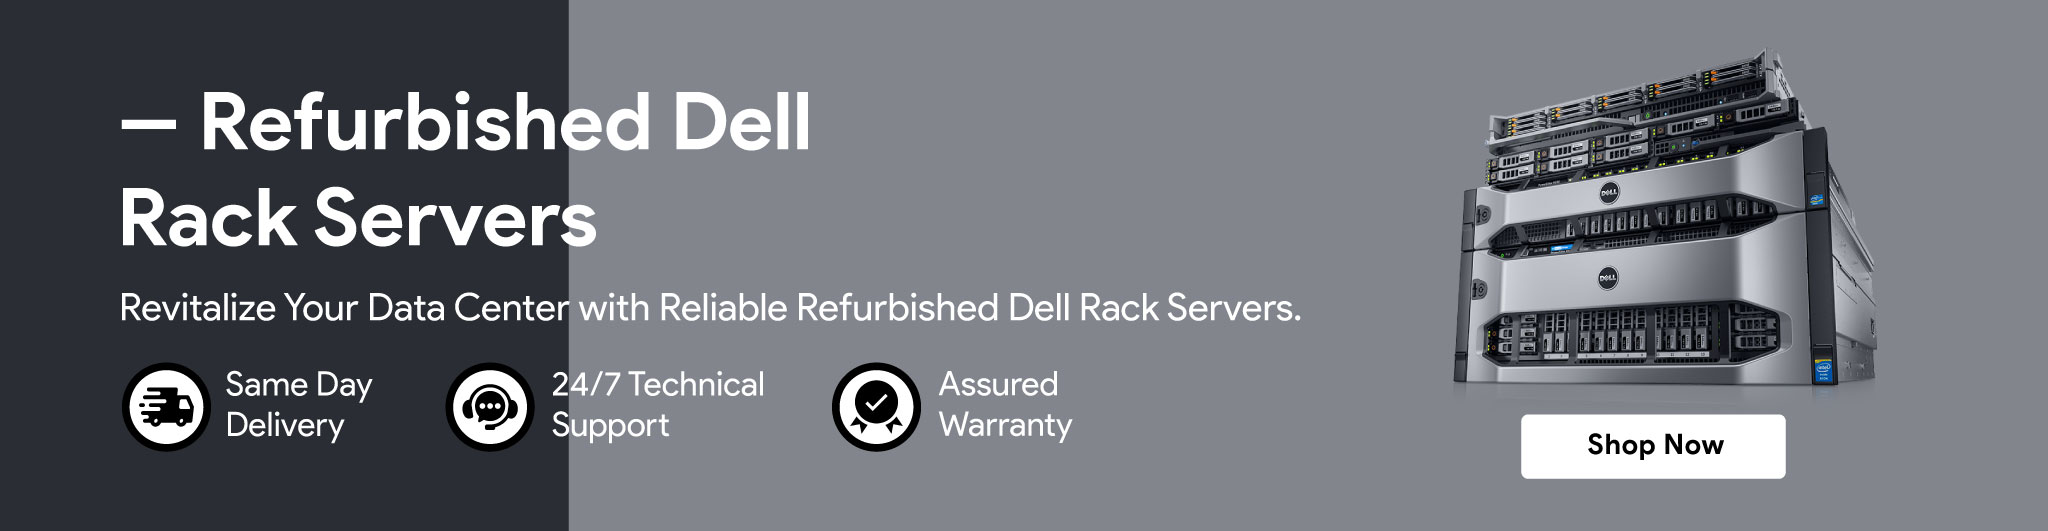 Refurbished Dell Rack Server in Kenya